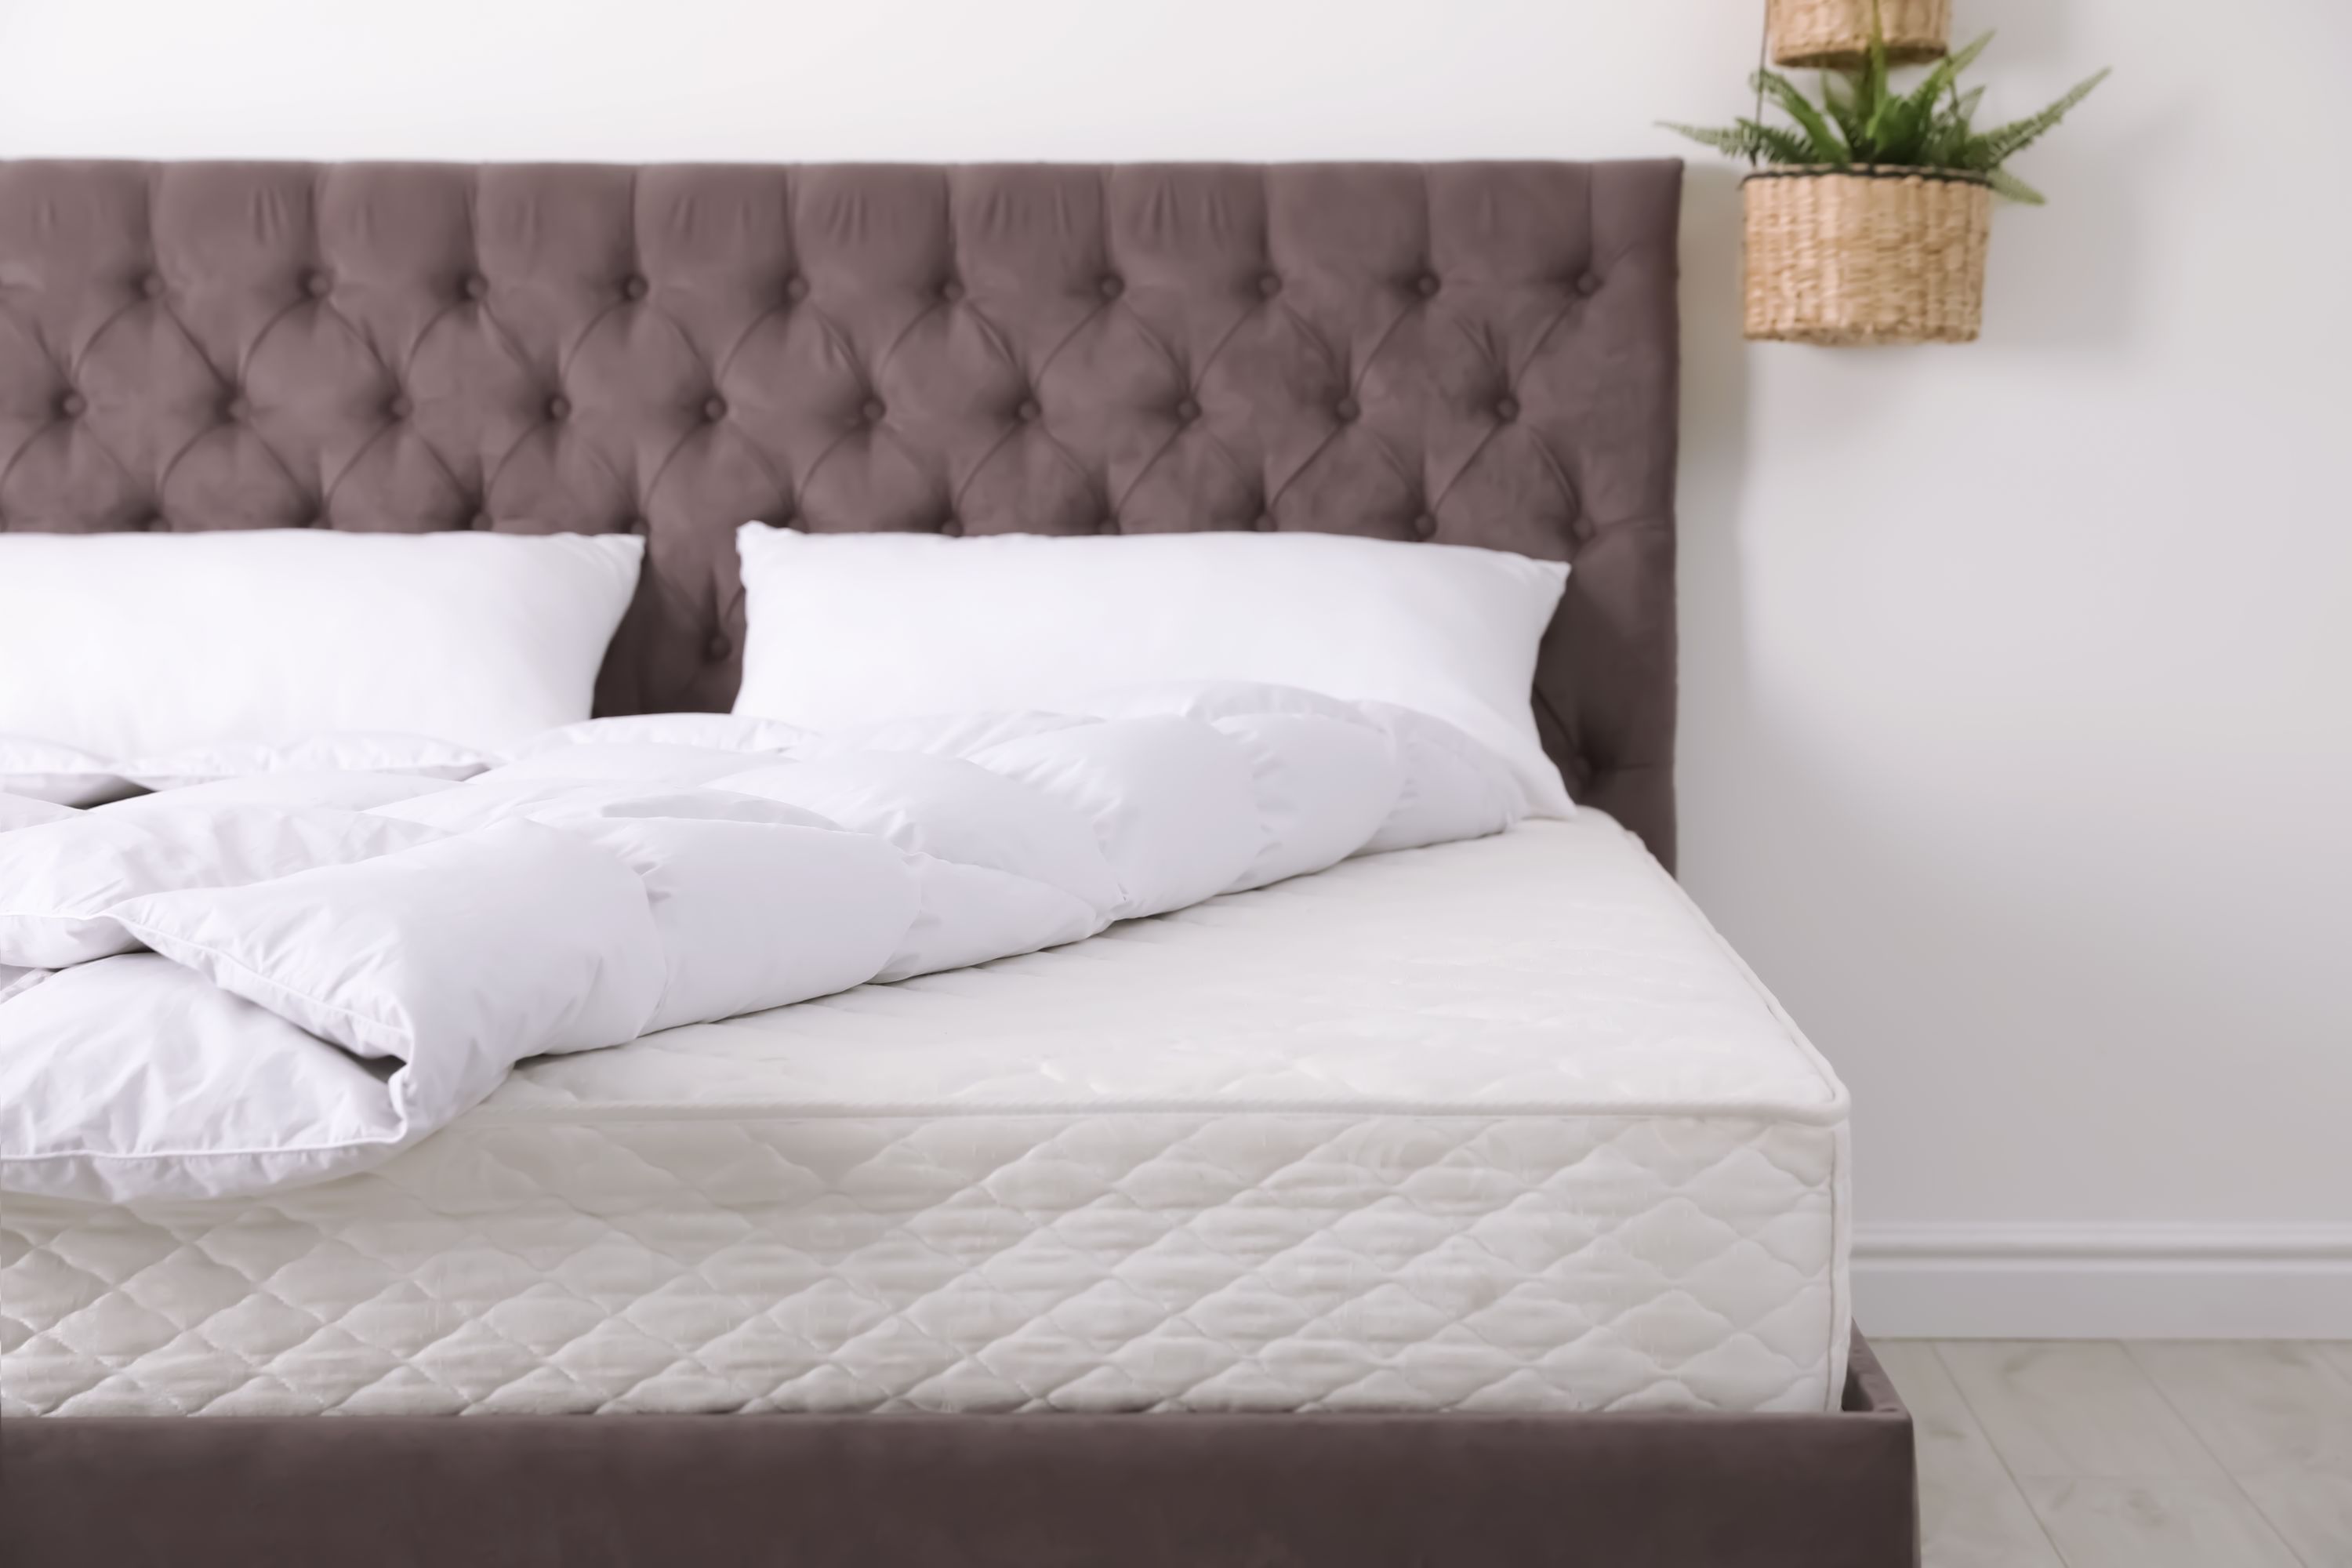 Black divan bed with white mattress